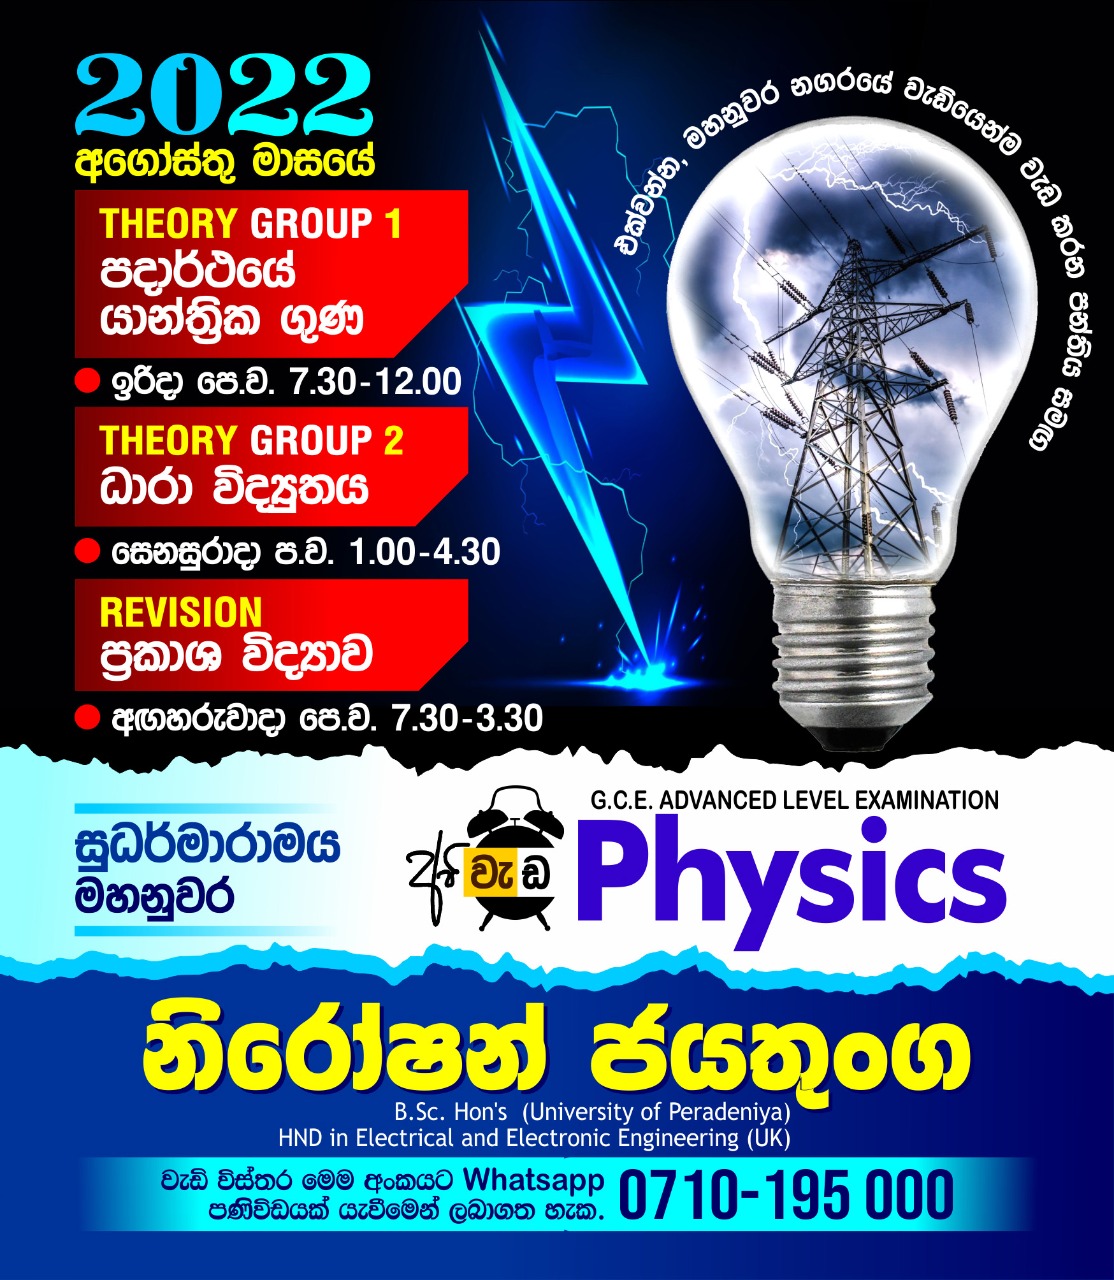 Niroshan Jayathunga, A Level Physics, Sudarmaramaya Kandy